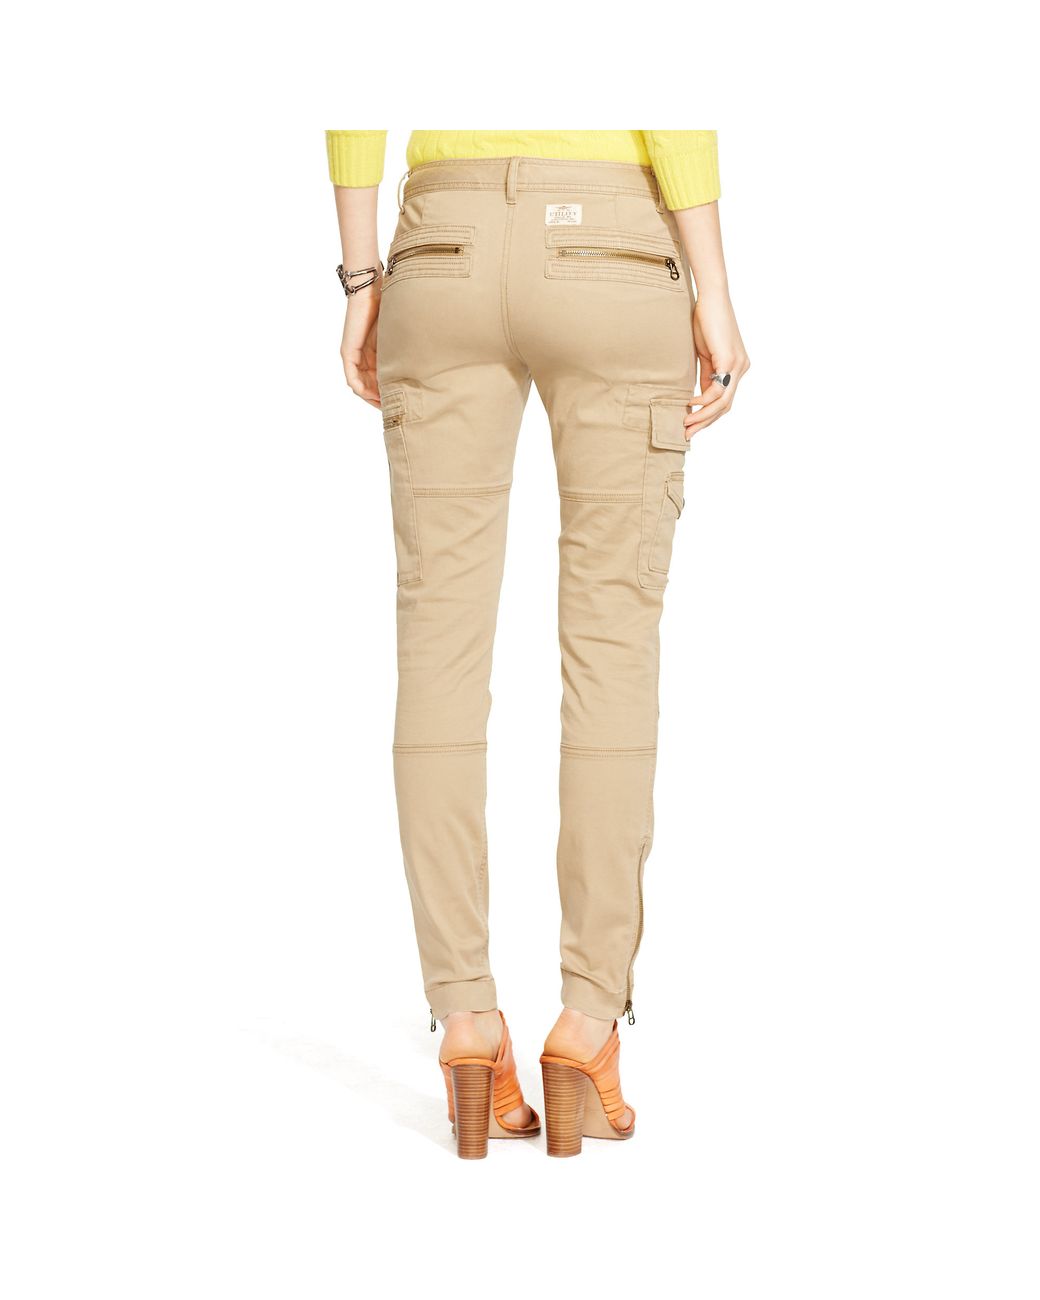  Women's Pants - Ralph Lauren / Women's Pants / Women's